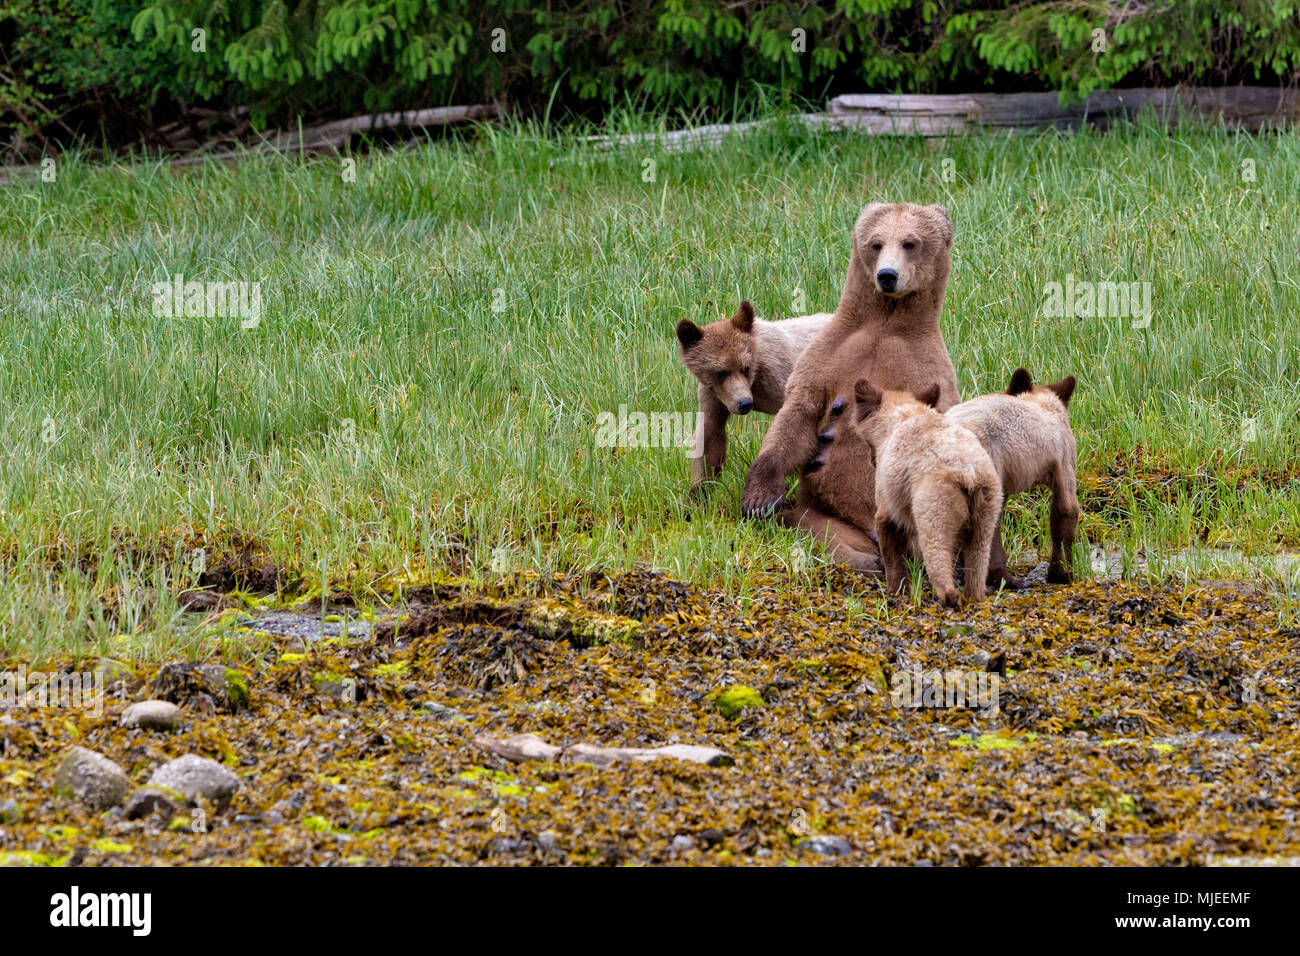 Orso grizzly mom allattava il Cubs in Gelndale Cove, British Columbia, Canada. Foto Stock